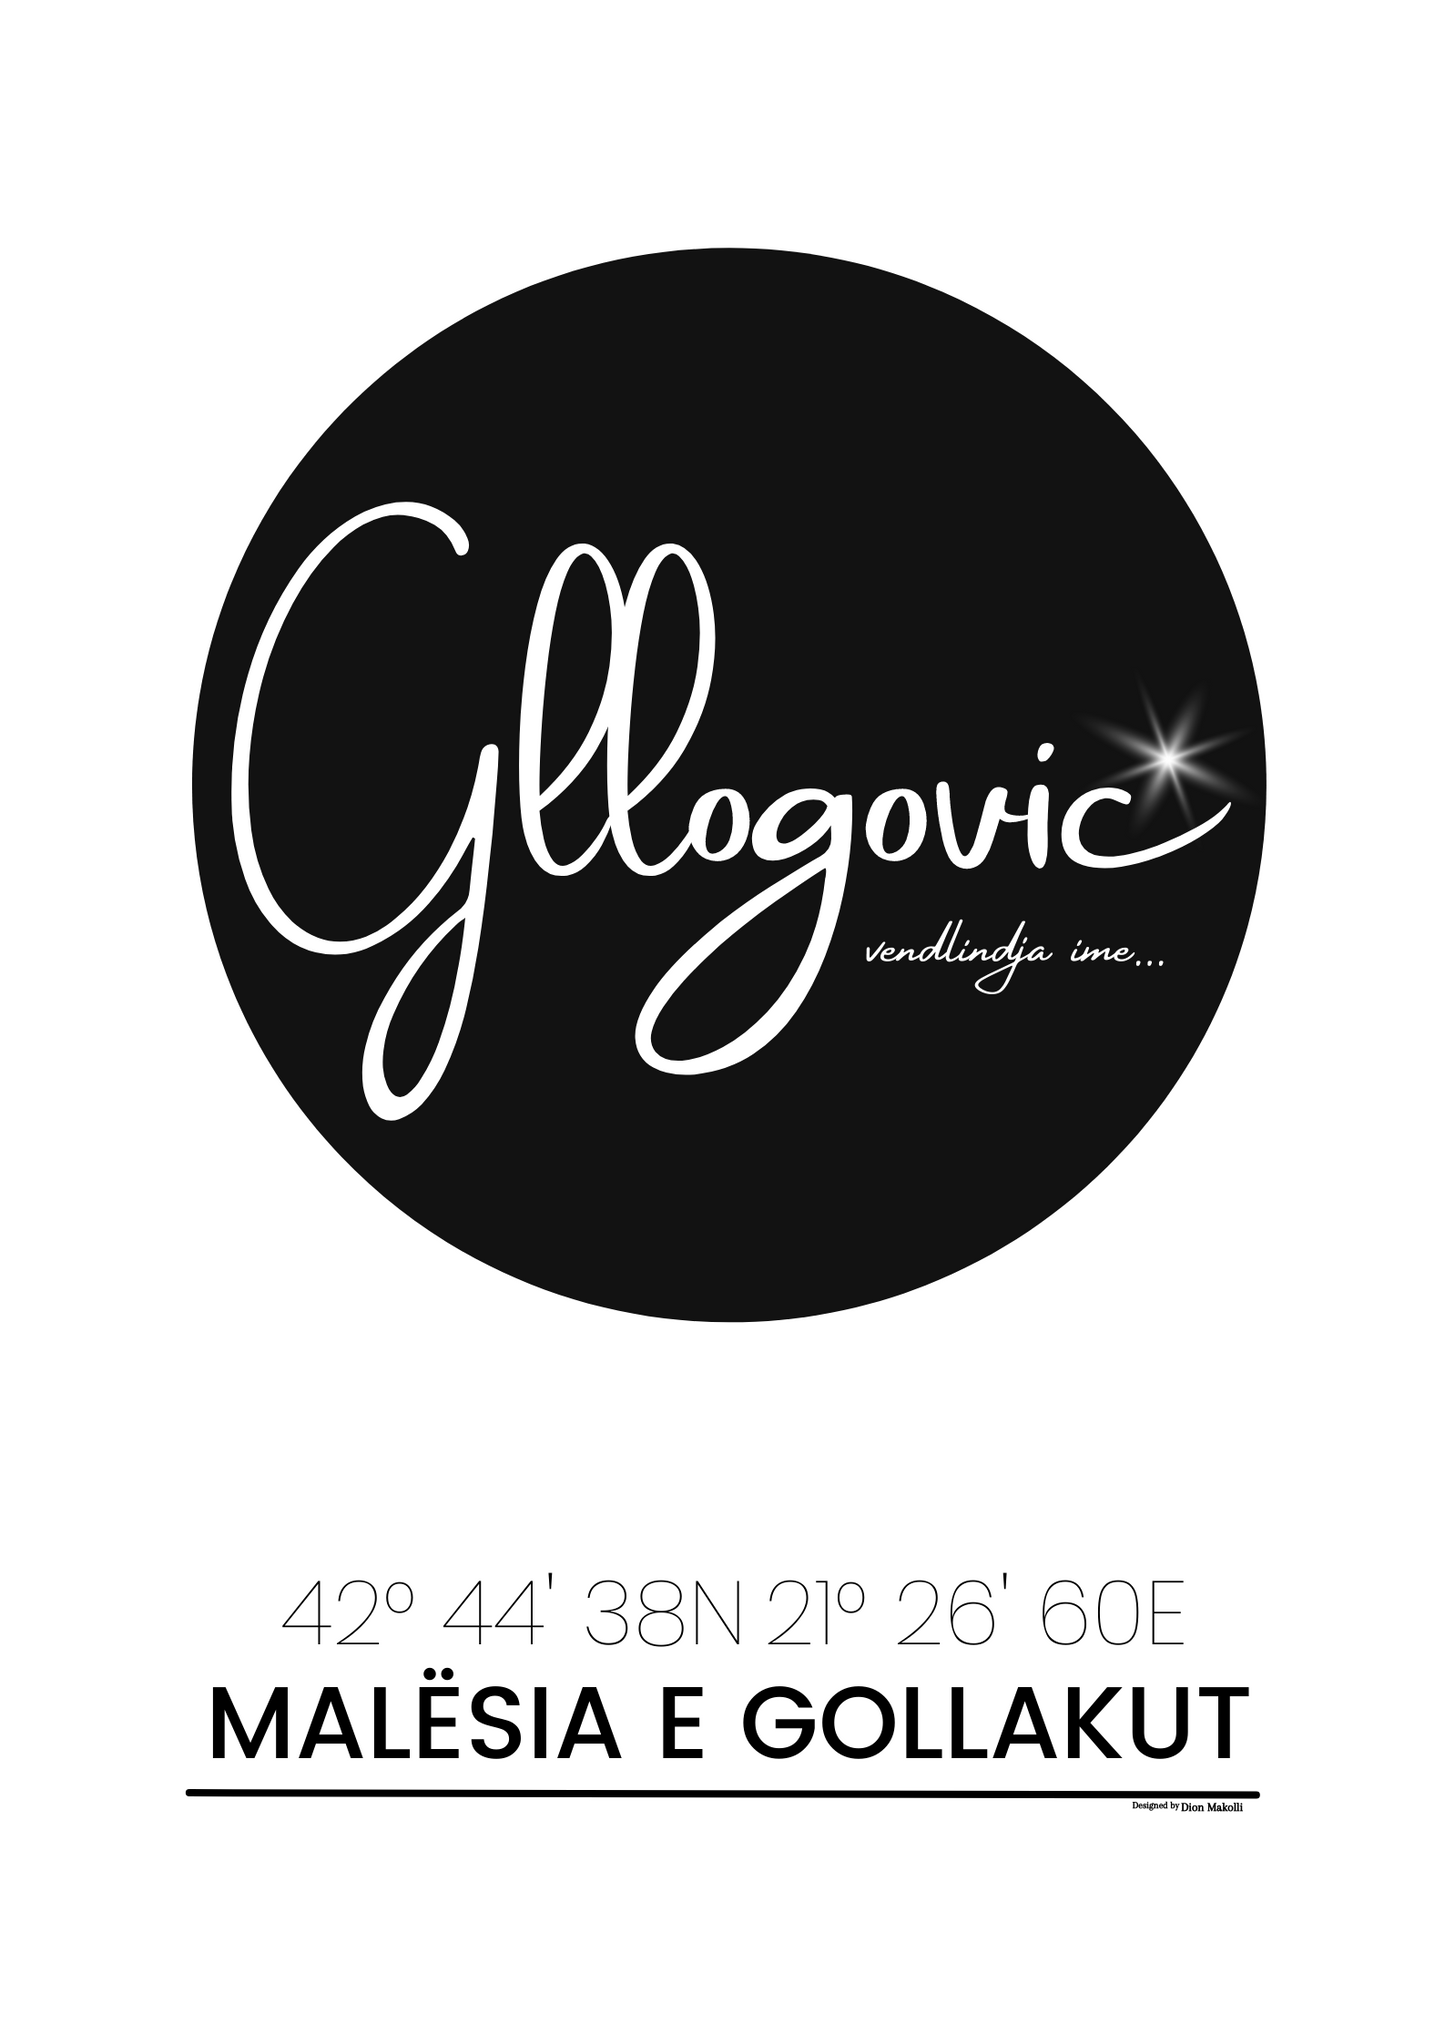 Gllogovic